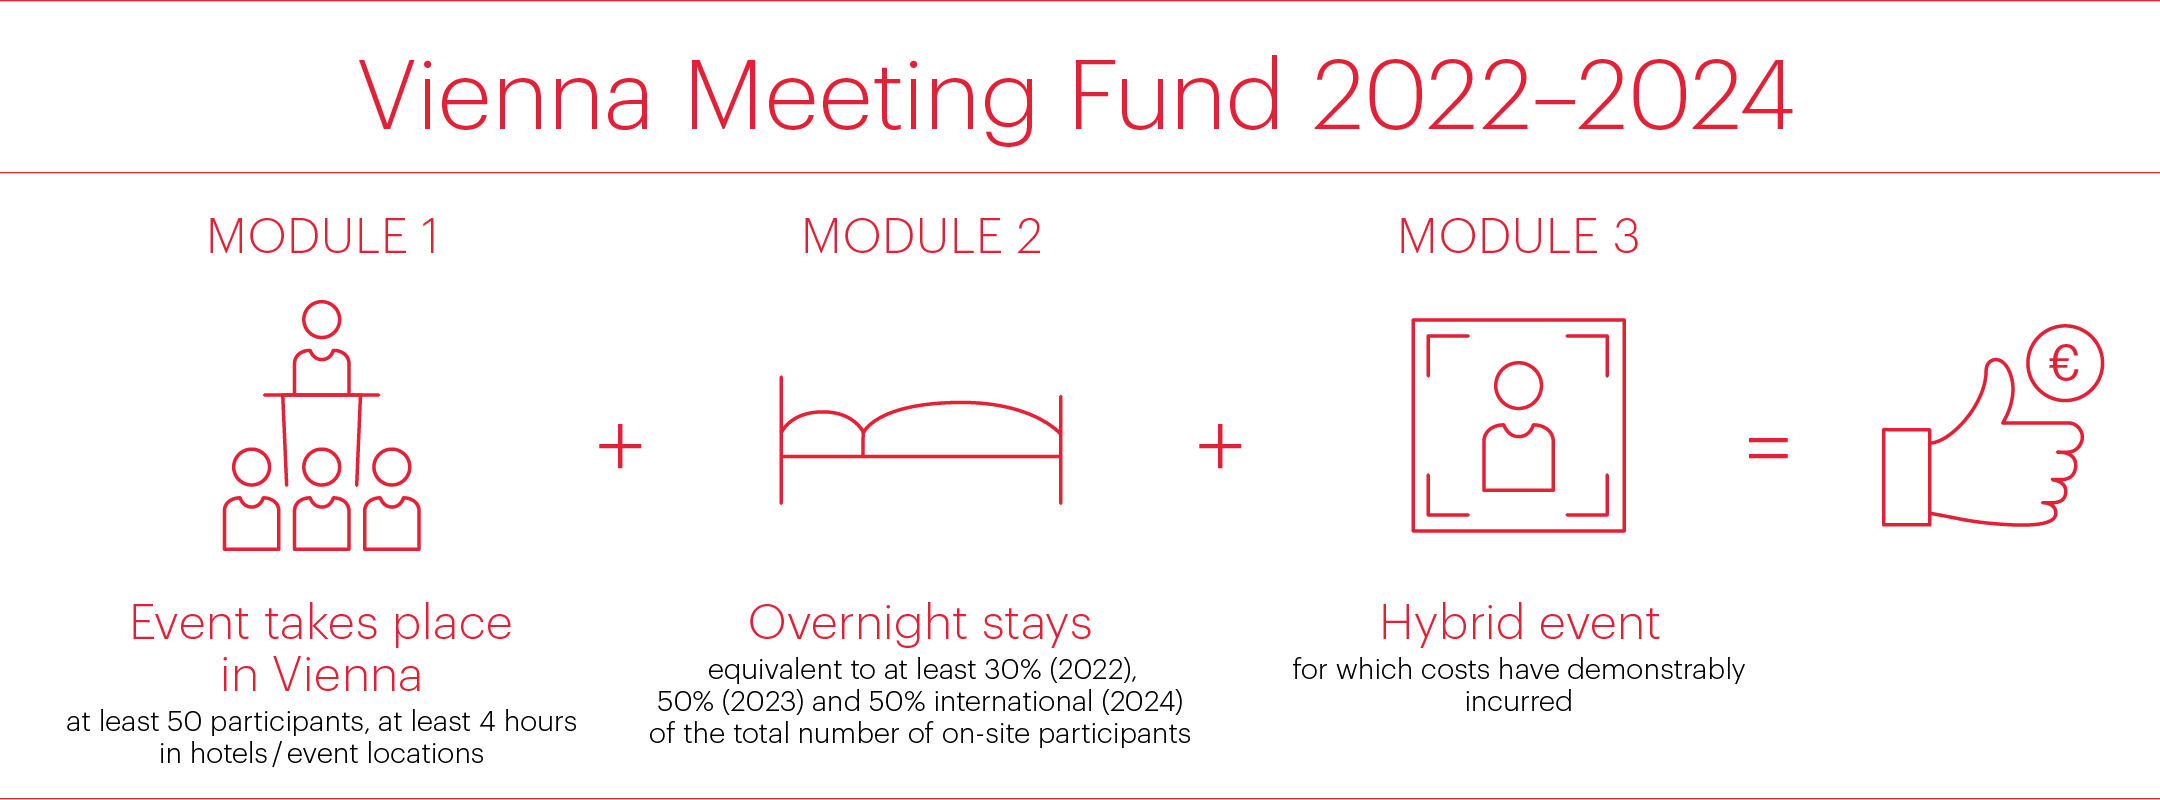 Vienna Meeting Fund 2022-2024 graphic